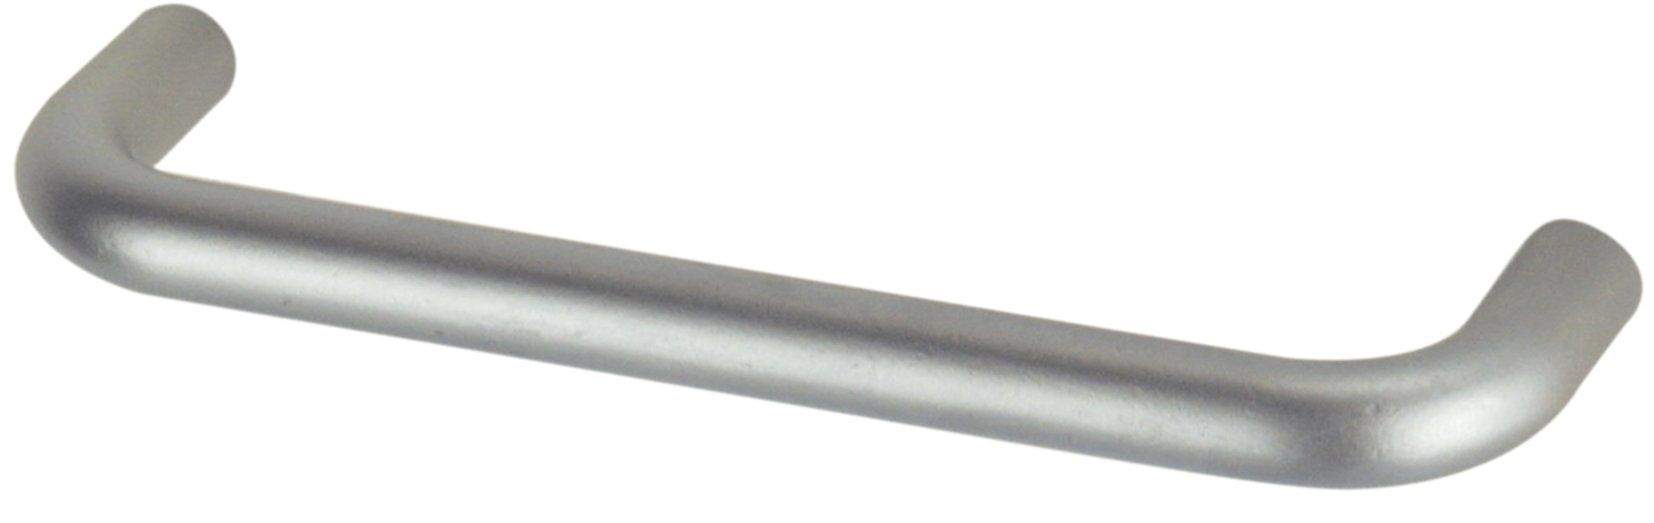 Maniglia in filo metallico con inserto in acciaio cromato satinato, L.104mm, P.8mm, P.28mm, interasse 96mm, 1 pezzo con viti.